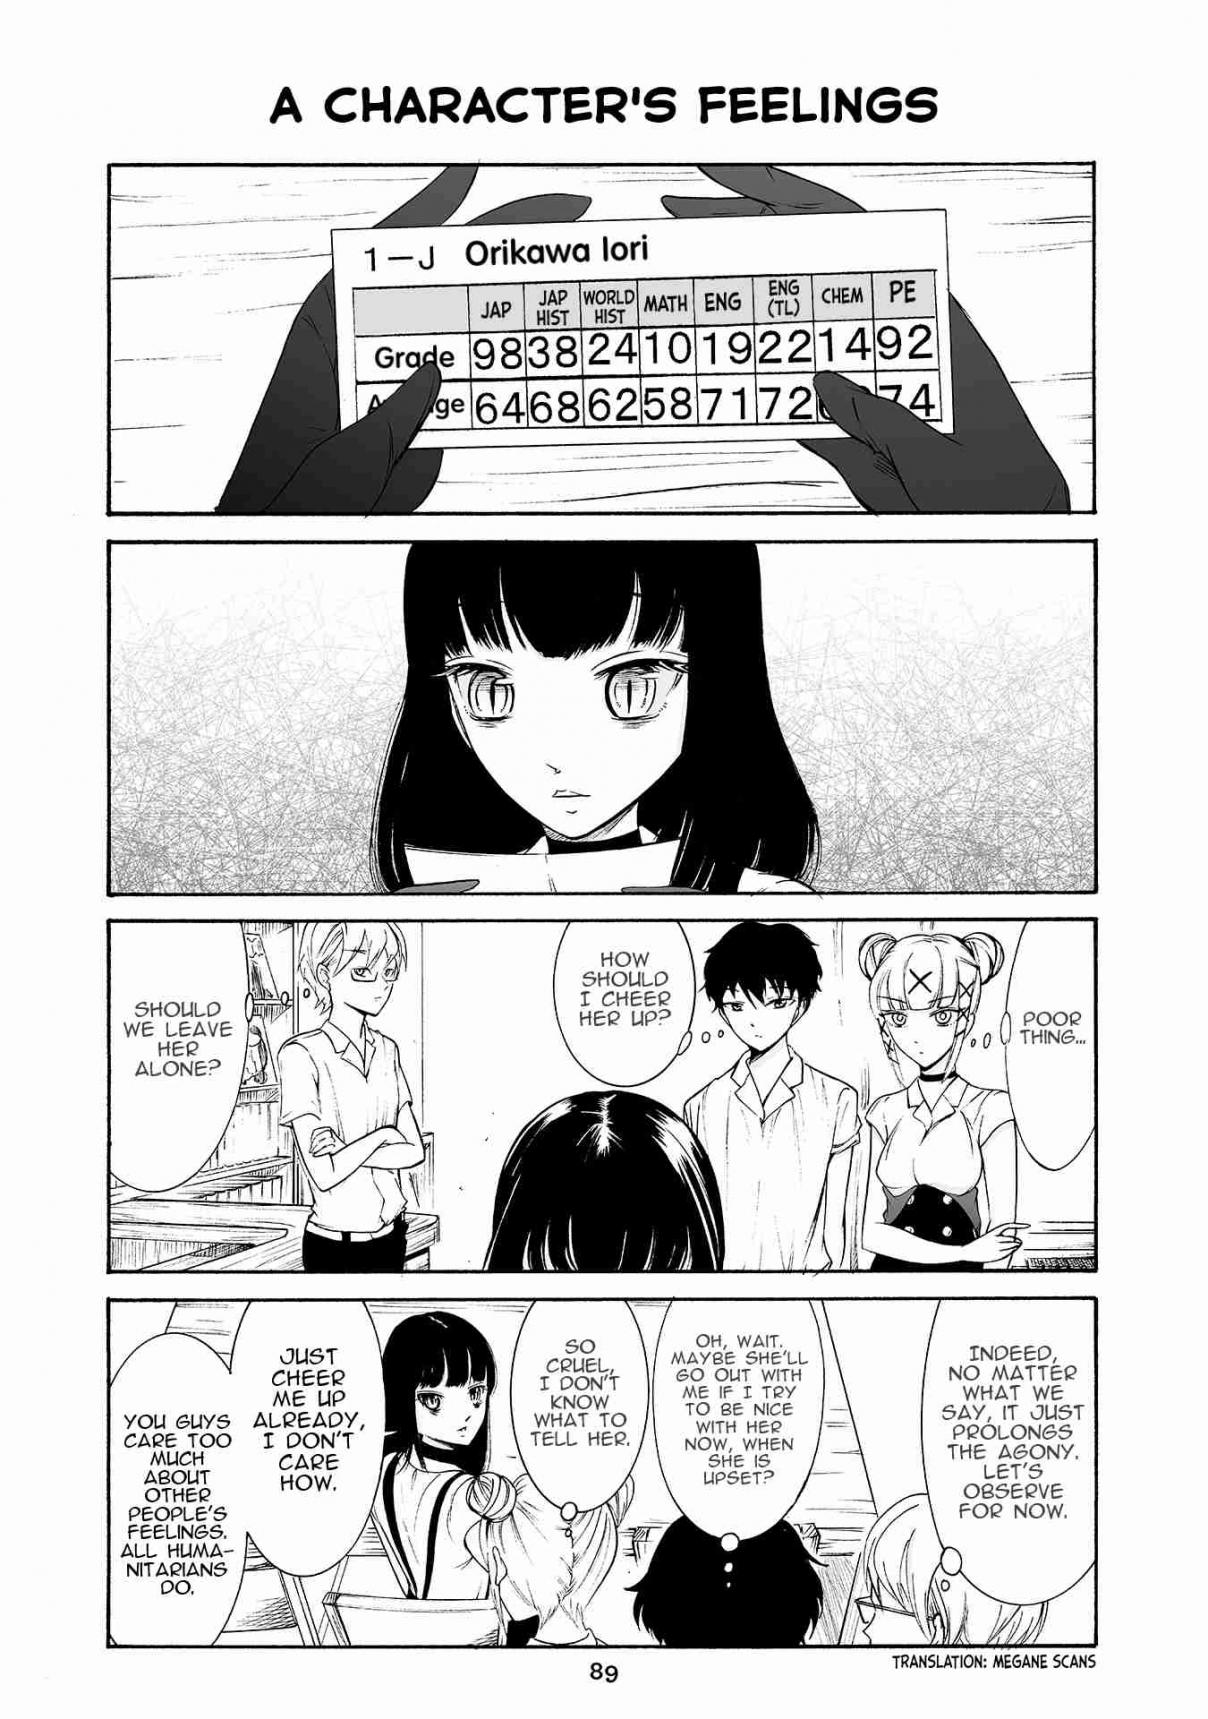 Kuzu to Megane to Bungaku Shoujo (Nise) Vol. 2 Ch. 172 A character's feelings